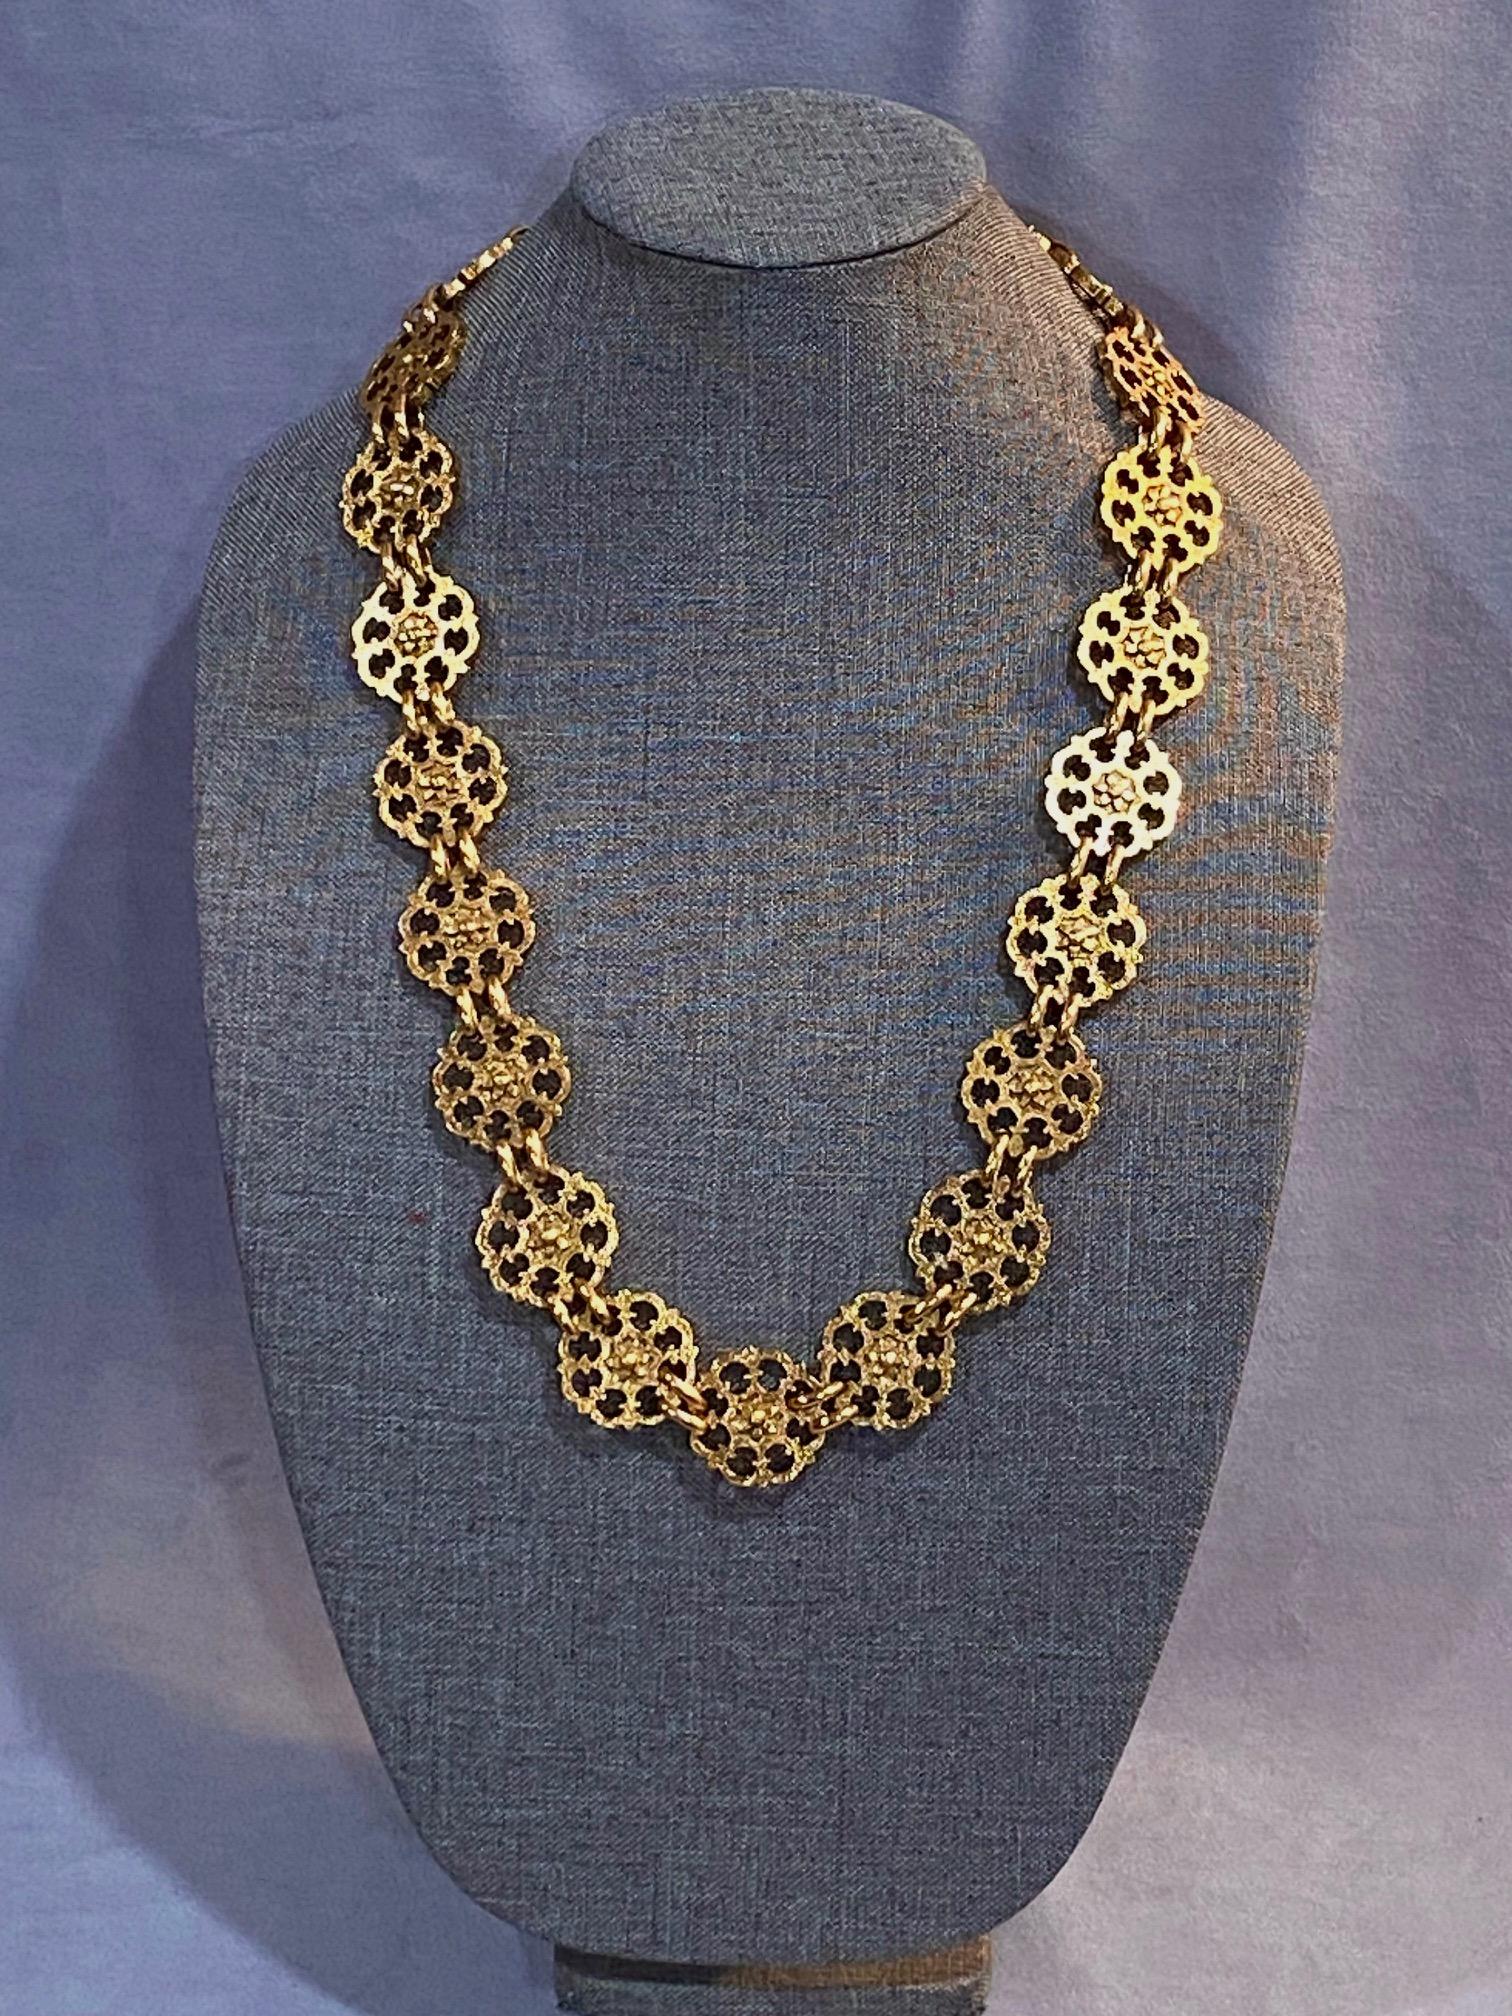 Ein schöner und sehr gut erhaltener Yves Saint Laurent Goldgürtel aus den 1980er Jahren. Der Gürtel hat einen kleinen Haken- und Ösenverschluss und kann leicht als Halskette getragen werden, wie auf den Fotos in Form einer Halskette gezeigt. Es gibt